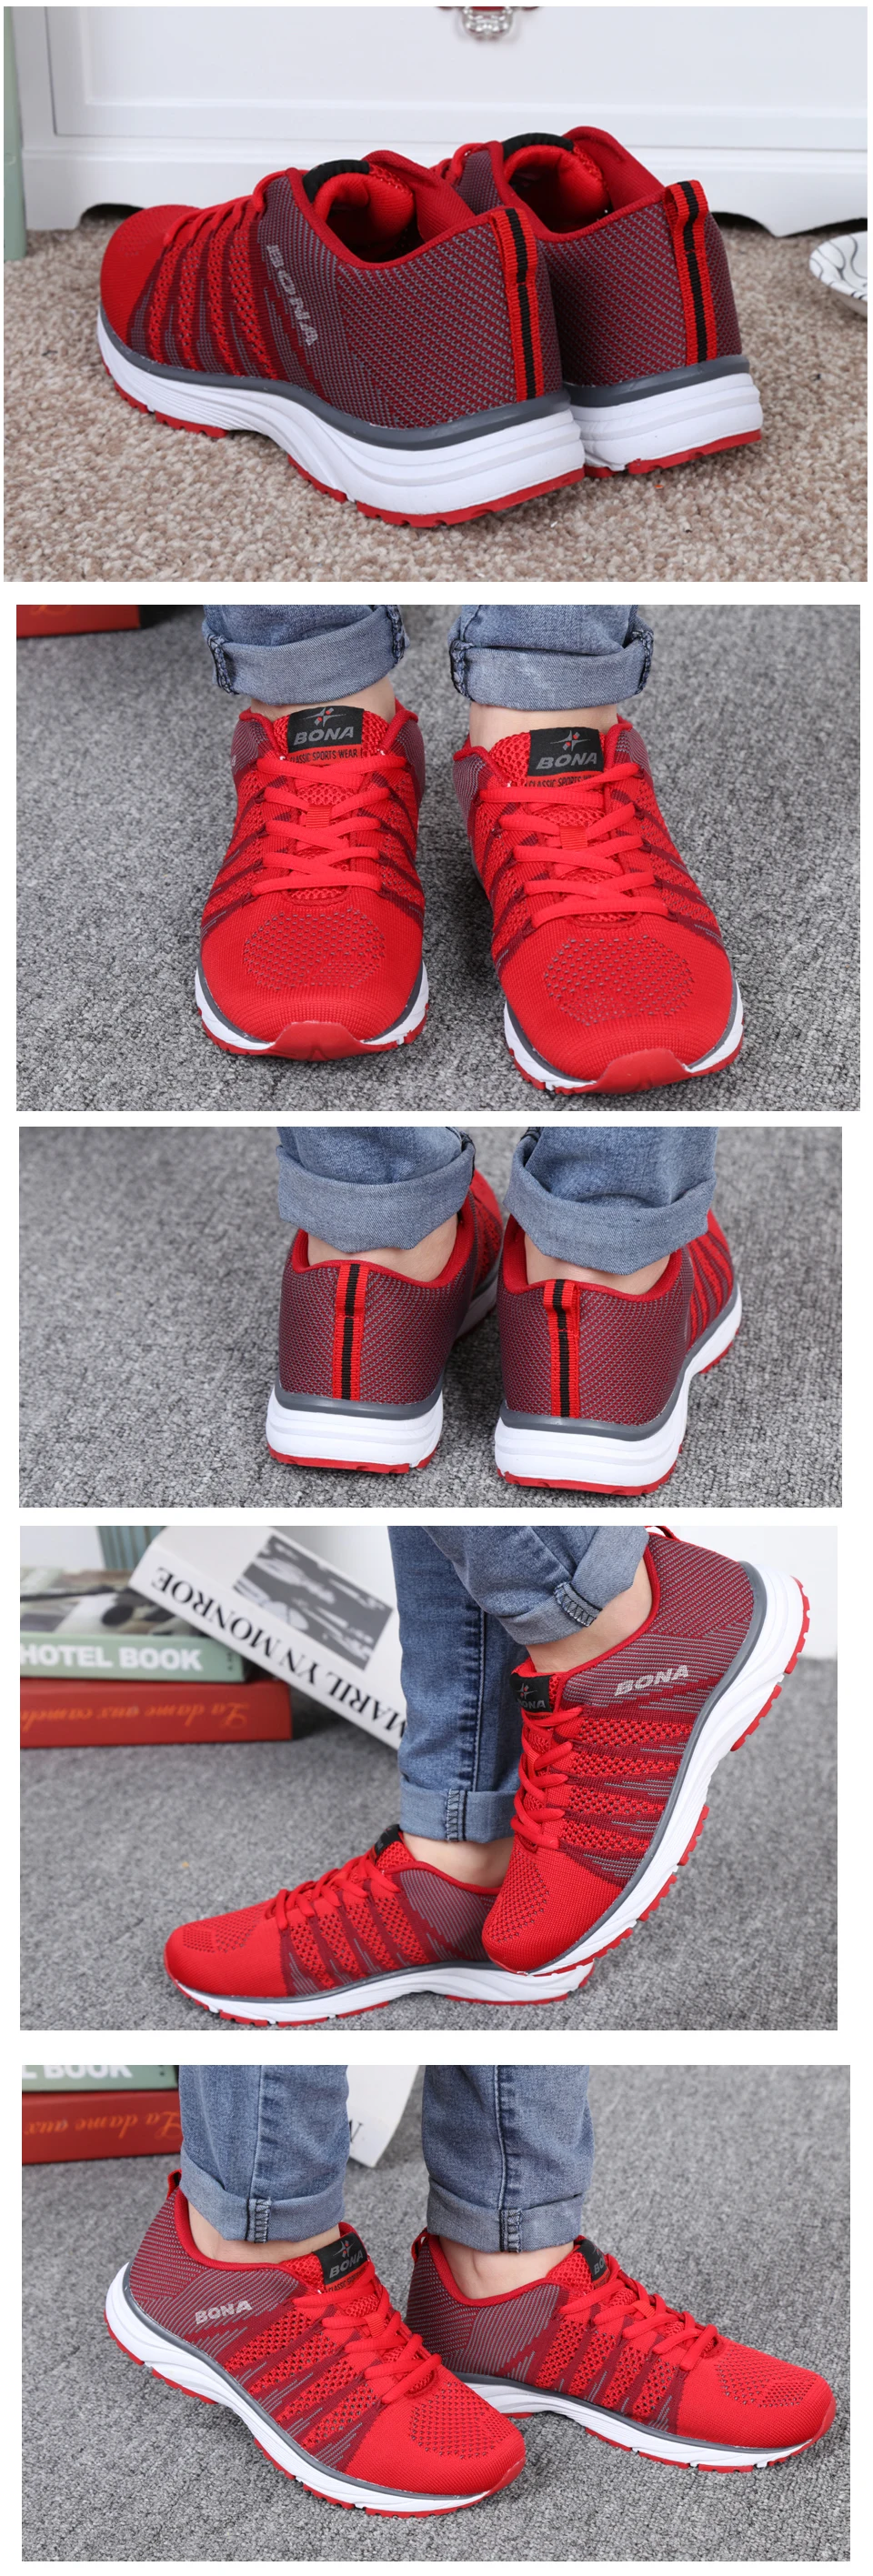 BONA/Новый типичный стиль женские кроссовки для прогулок и бега кроссовки на шнуровке сетчатая спортивная обувь Мягкая Быстрая бесплатная